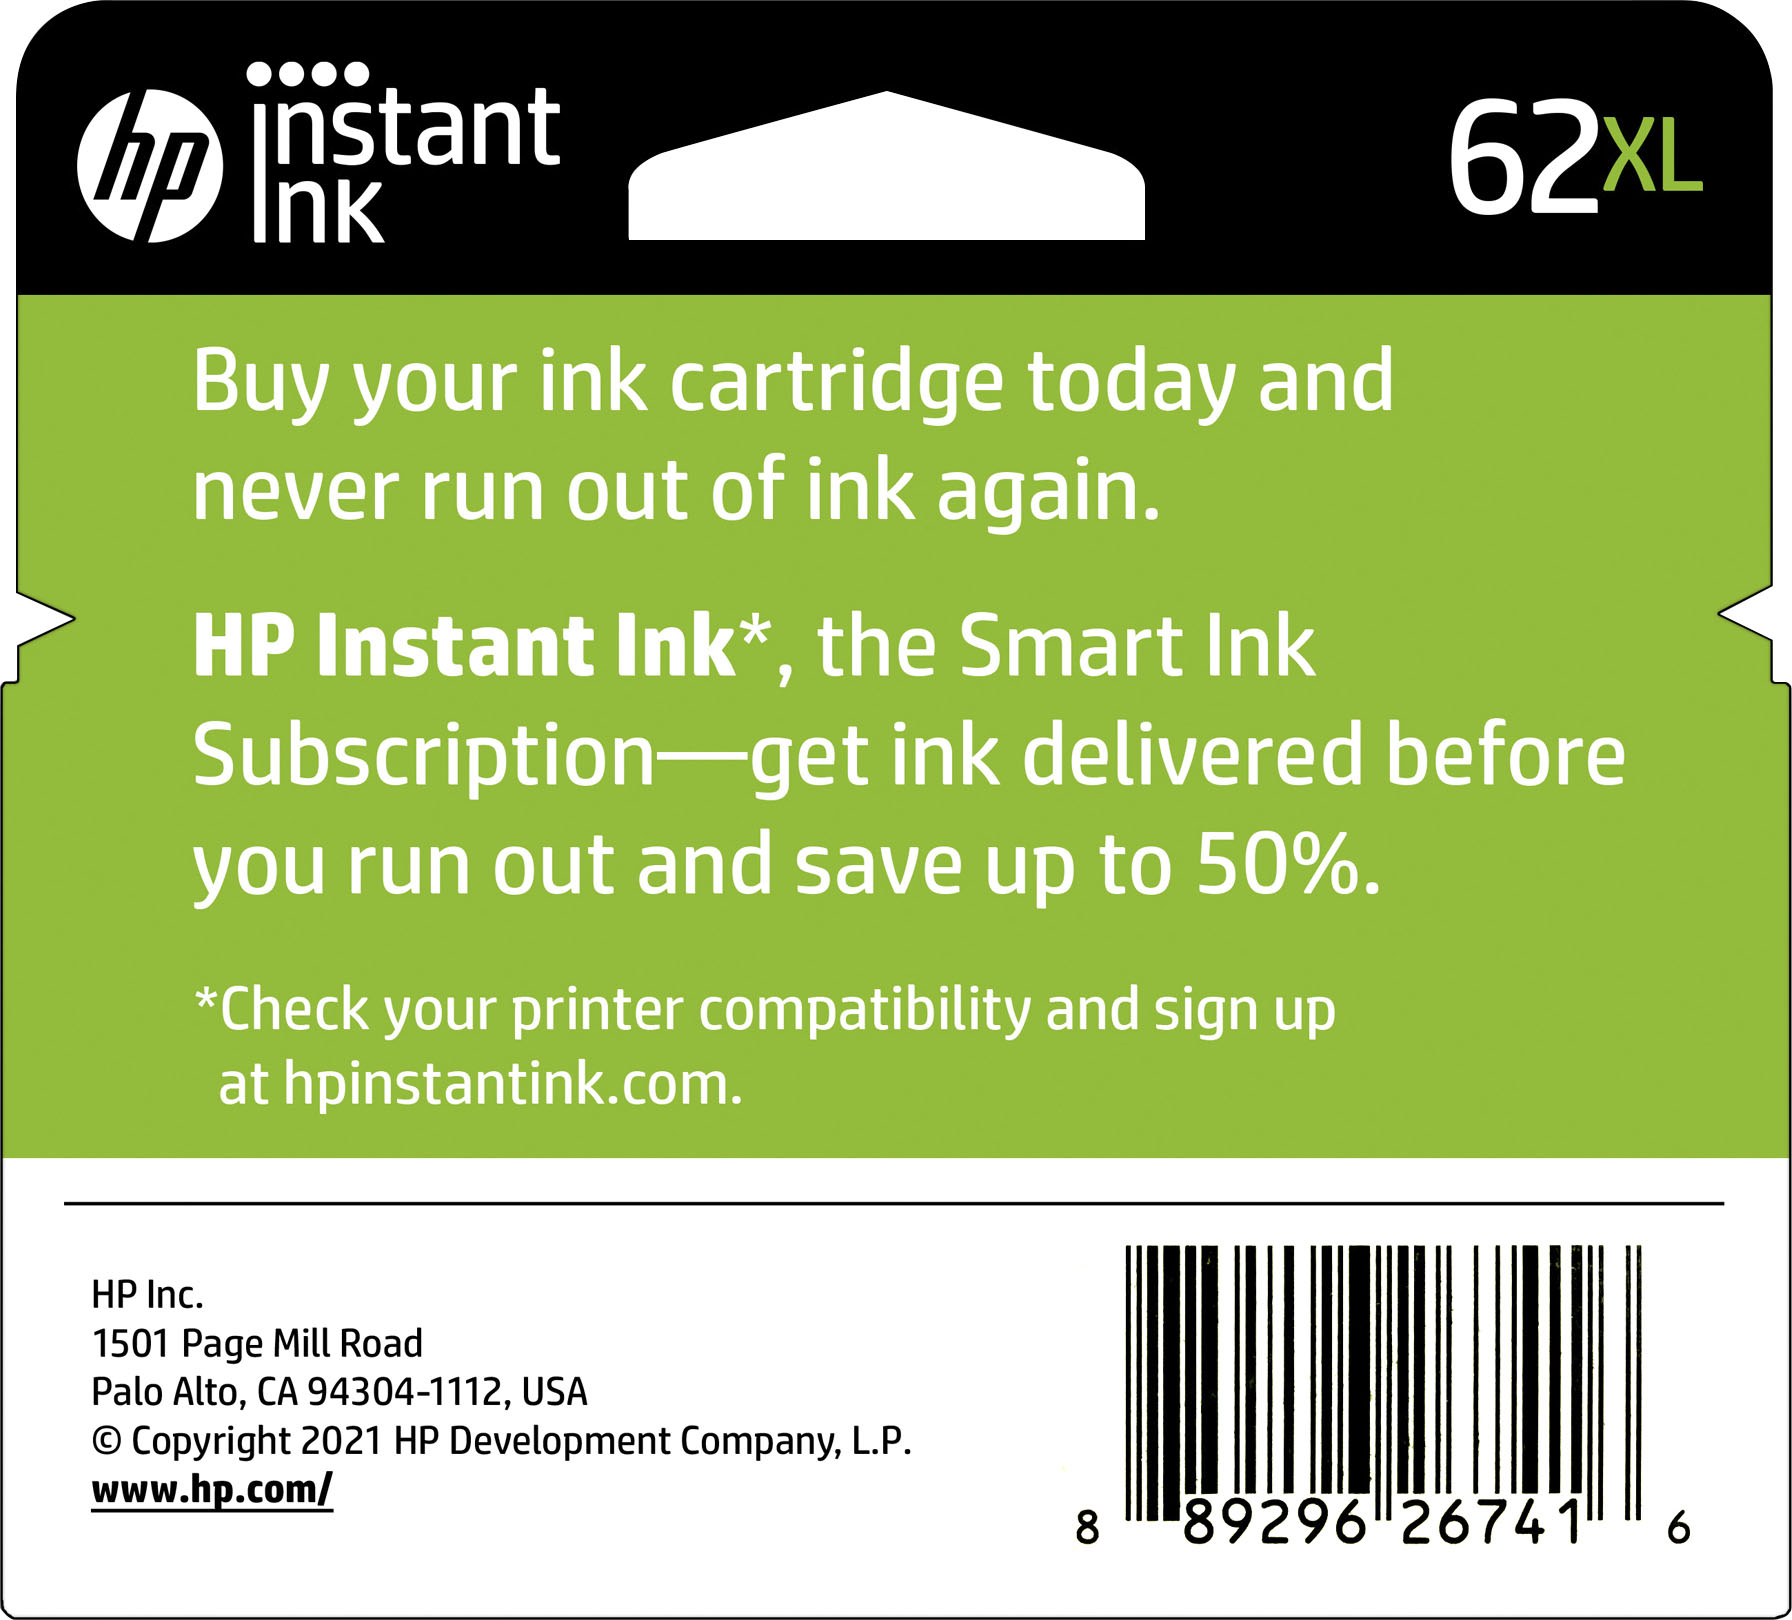 HP 62 Standard Capacity Ink Cartridge Tri-Color C2P06AN#140 - Best Buy